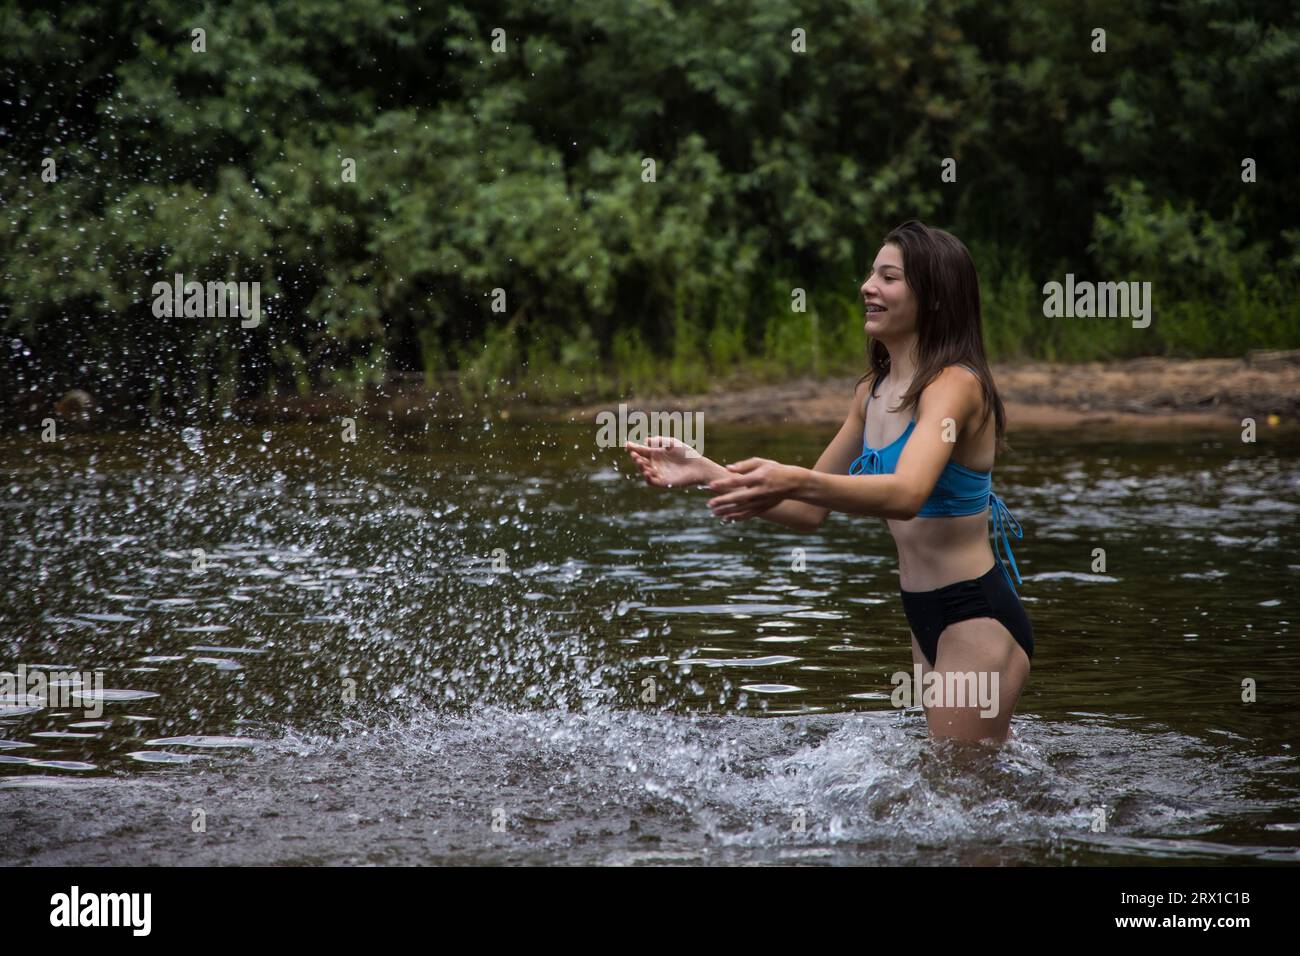 Teenager-Mädchen, das Wasser in einen Fluss spritzt Stockfoto